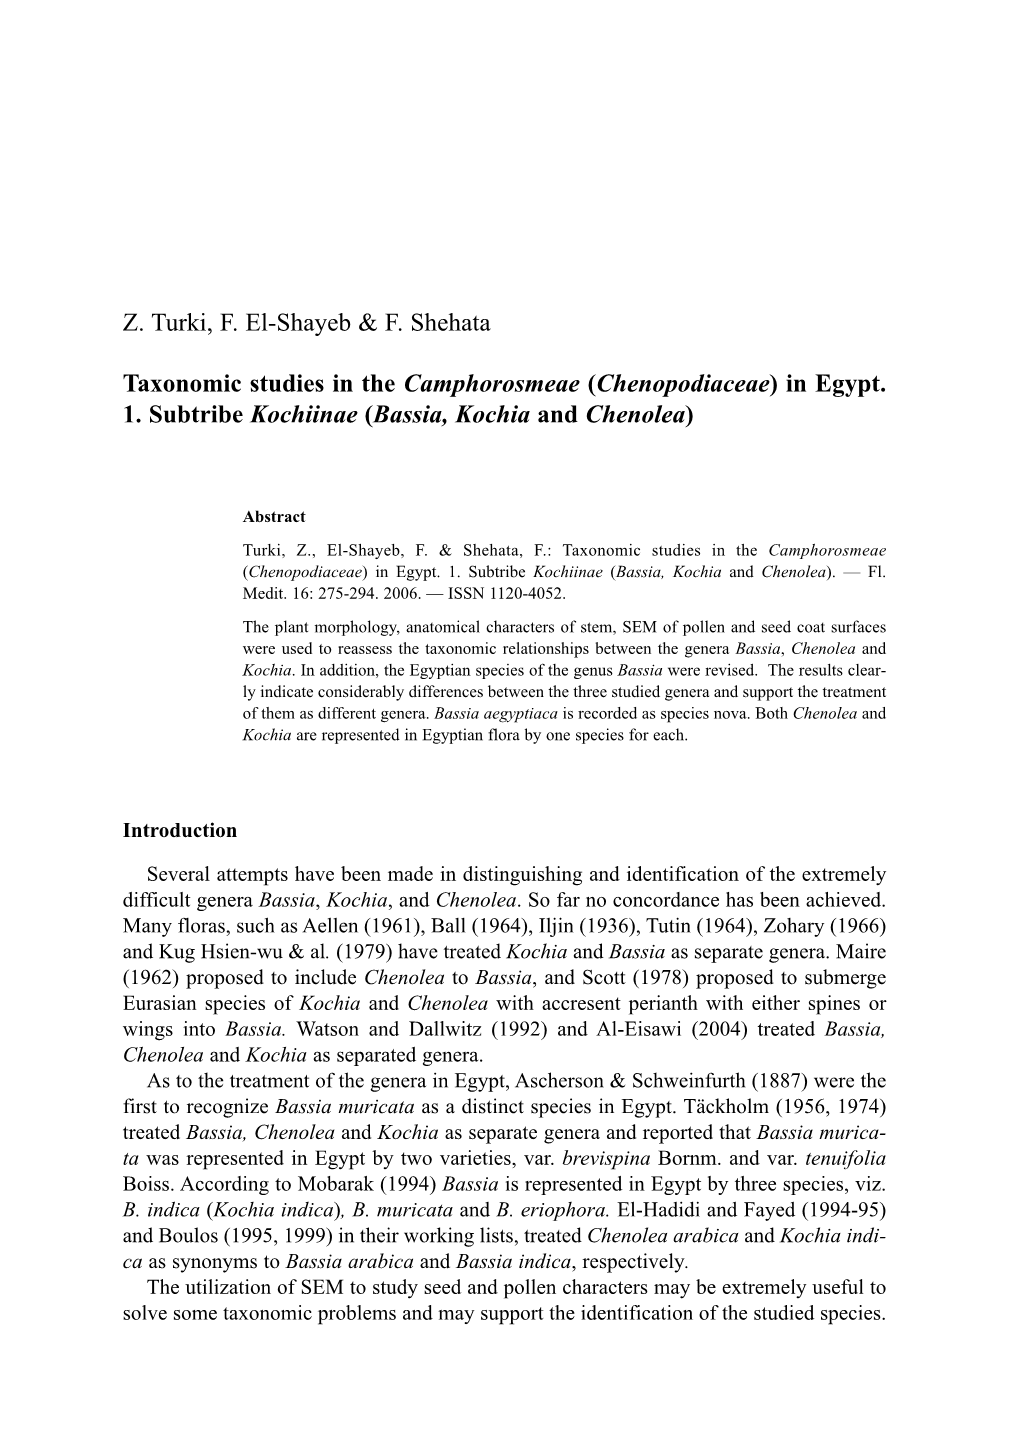 Z. Turki, F. El-Shayeb & F. Shehata Taxonomic Studies in The